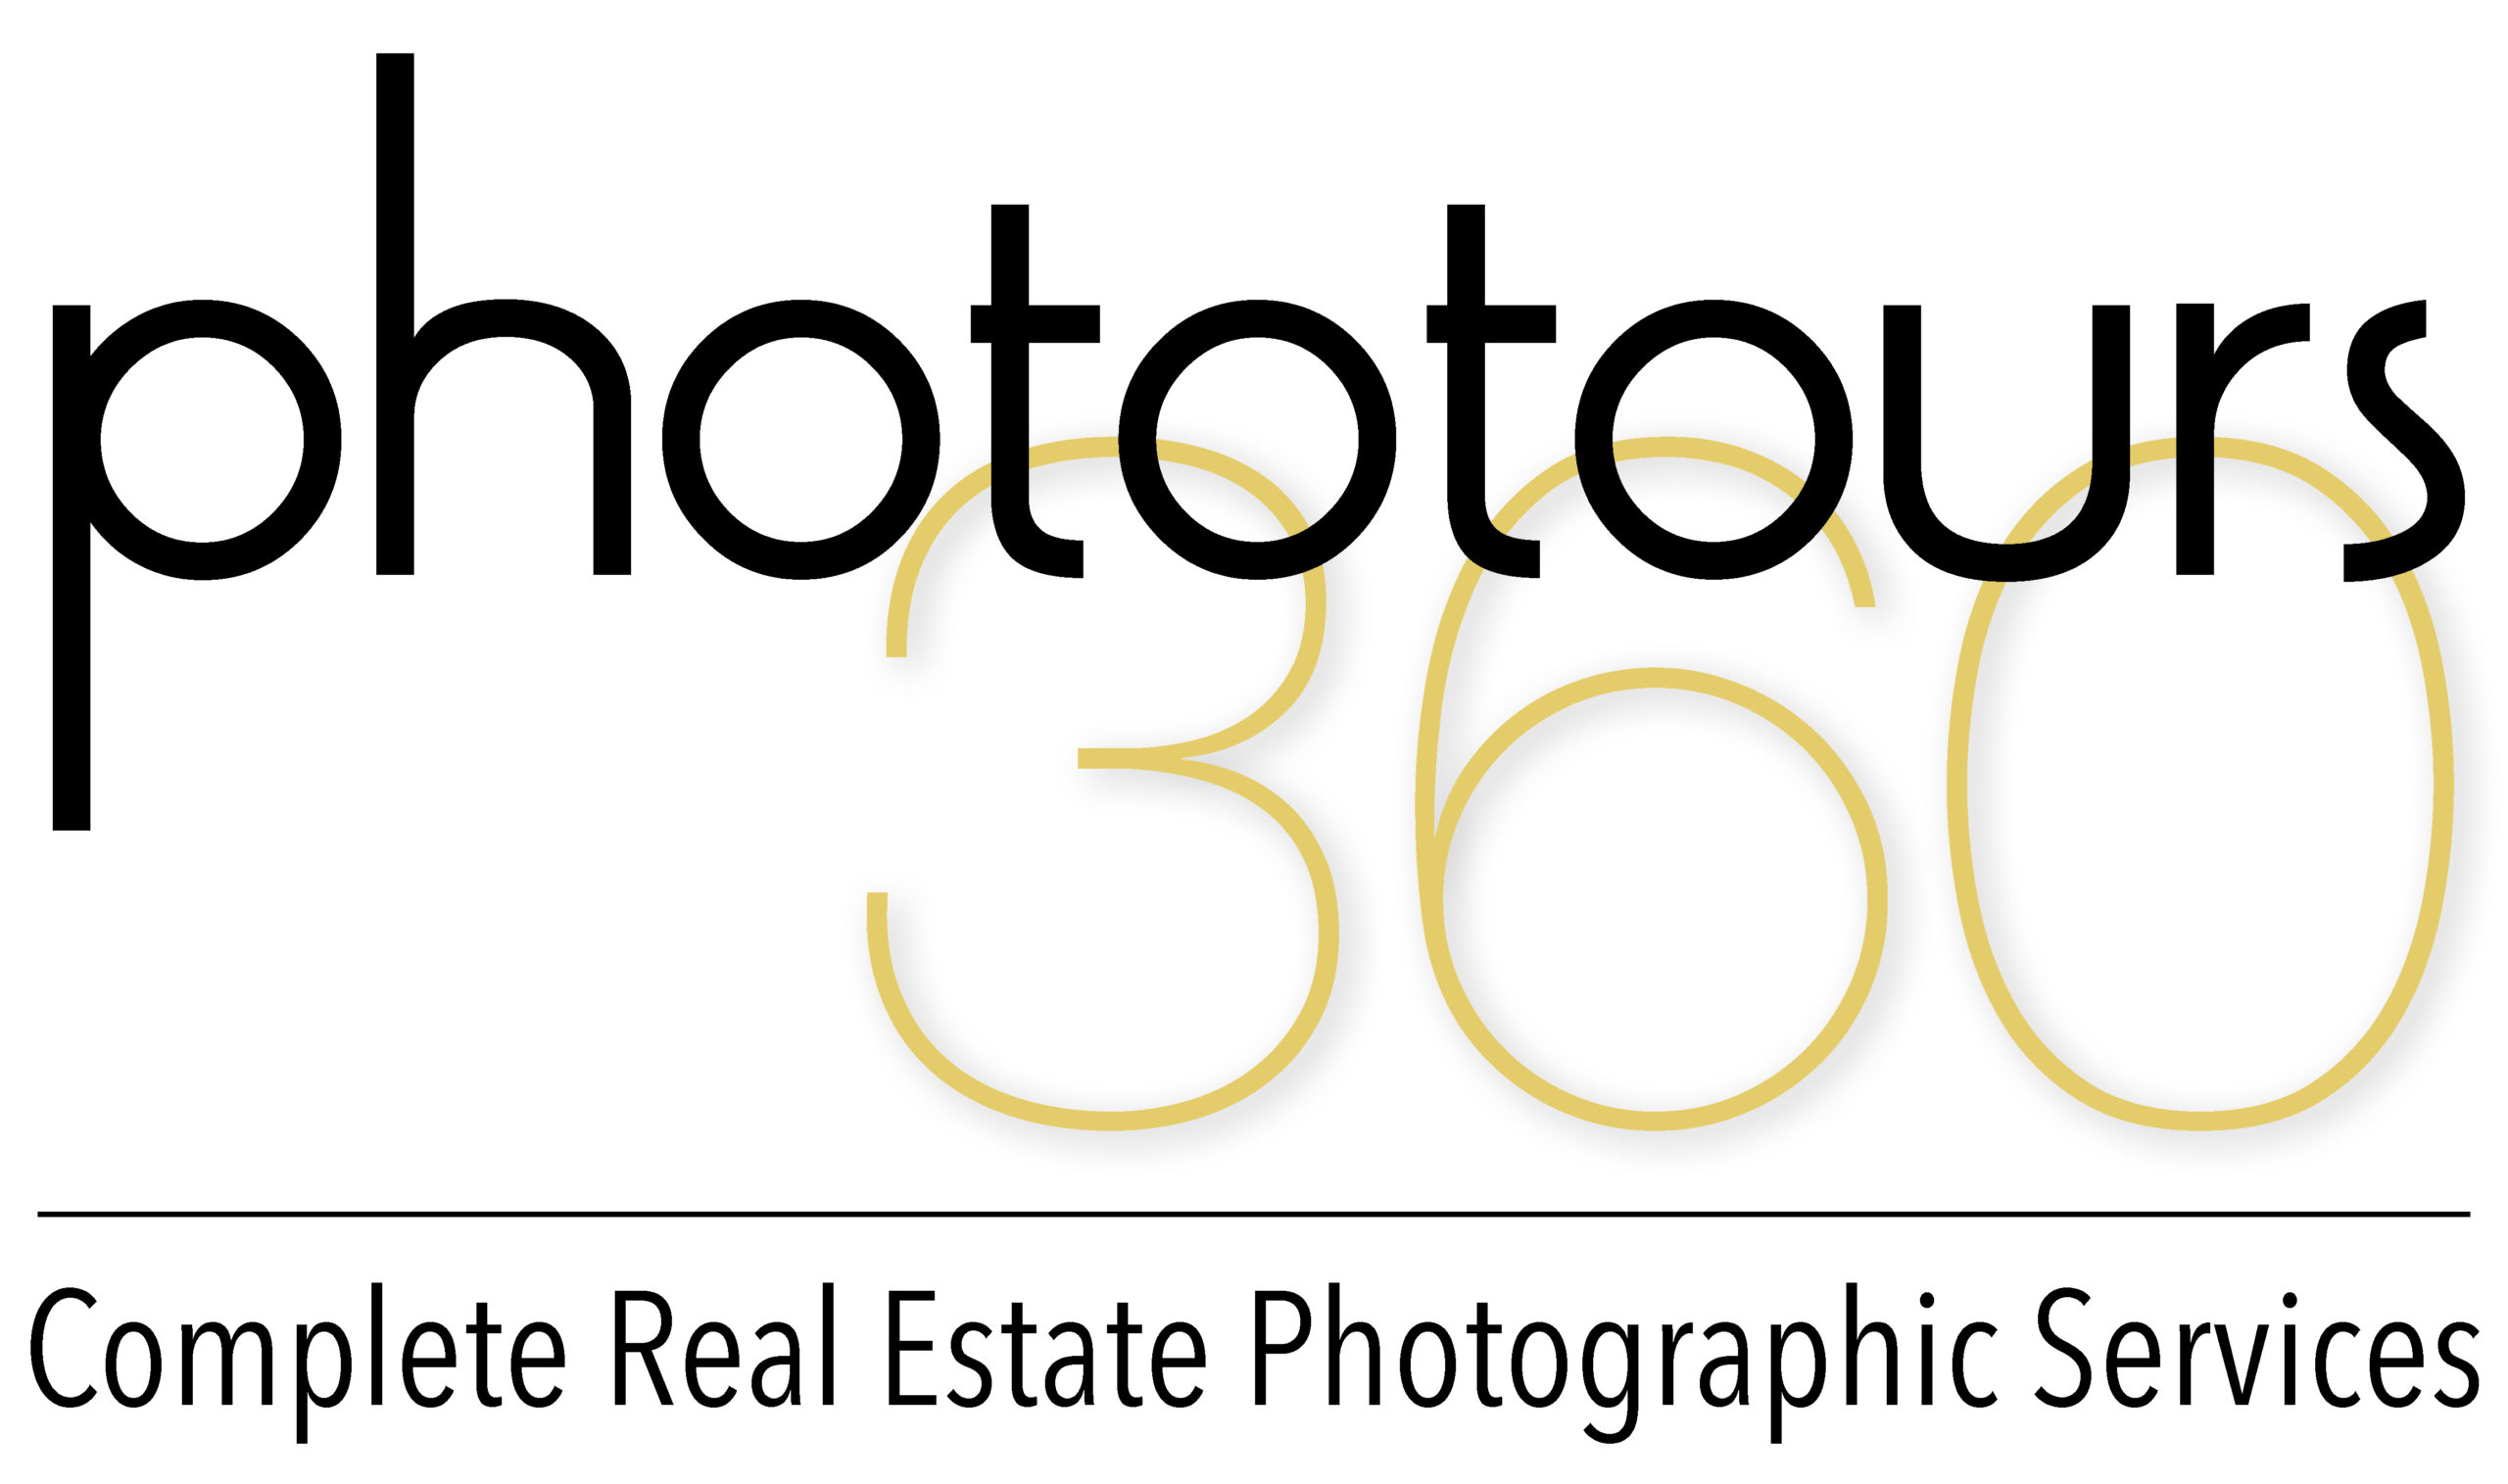 Phototours360 Logo scaled